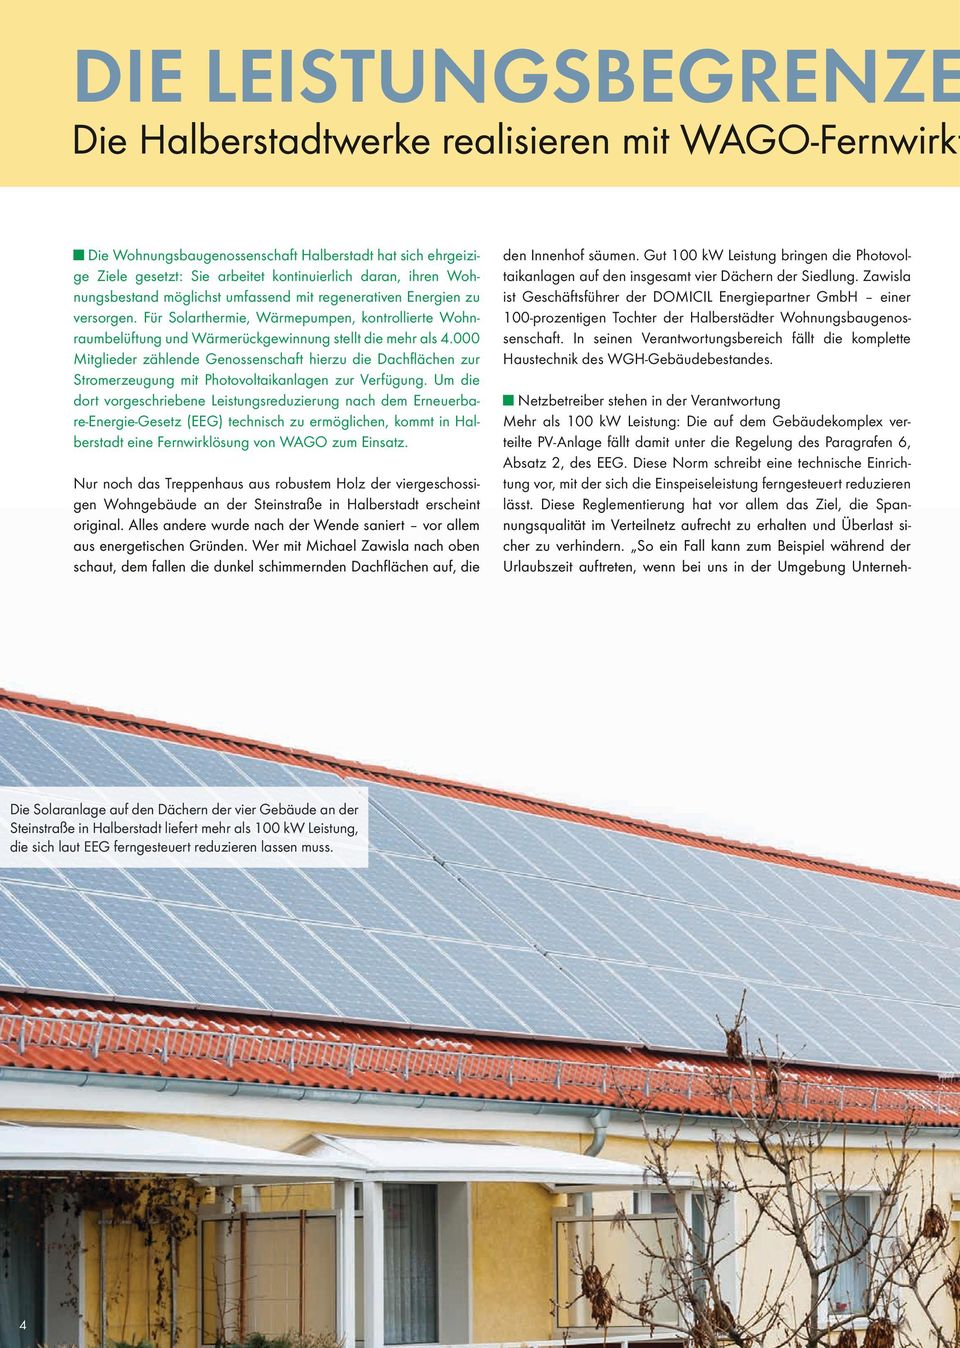 000 Mitglieder zählende Genossenschaft hierzu die Dachflächen zur Stromerzeugung mit Photovoltaikanlagen zur Verfügung.